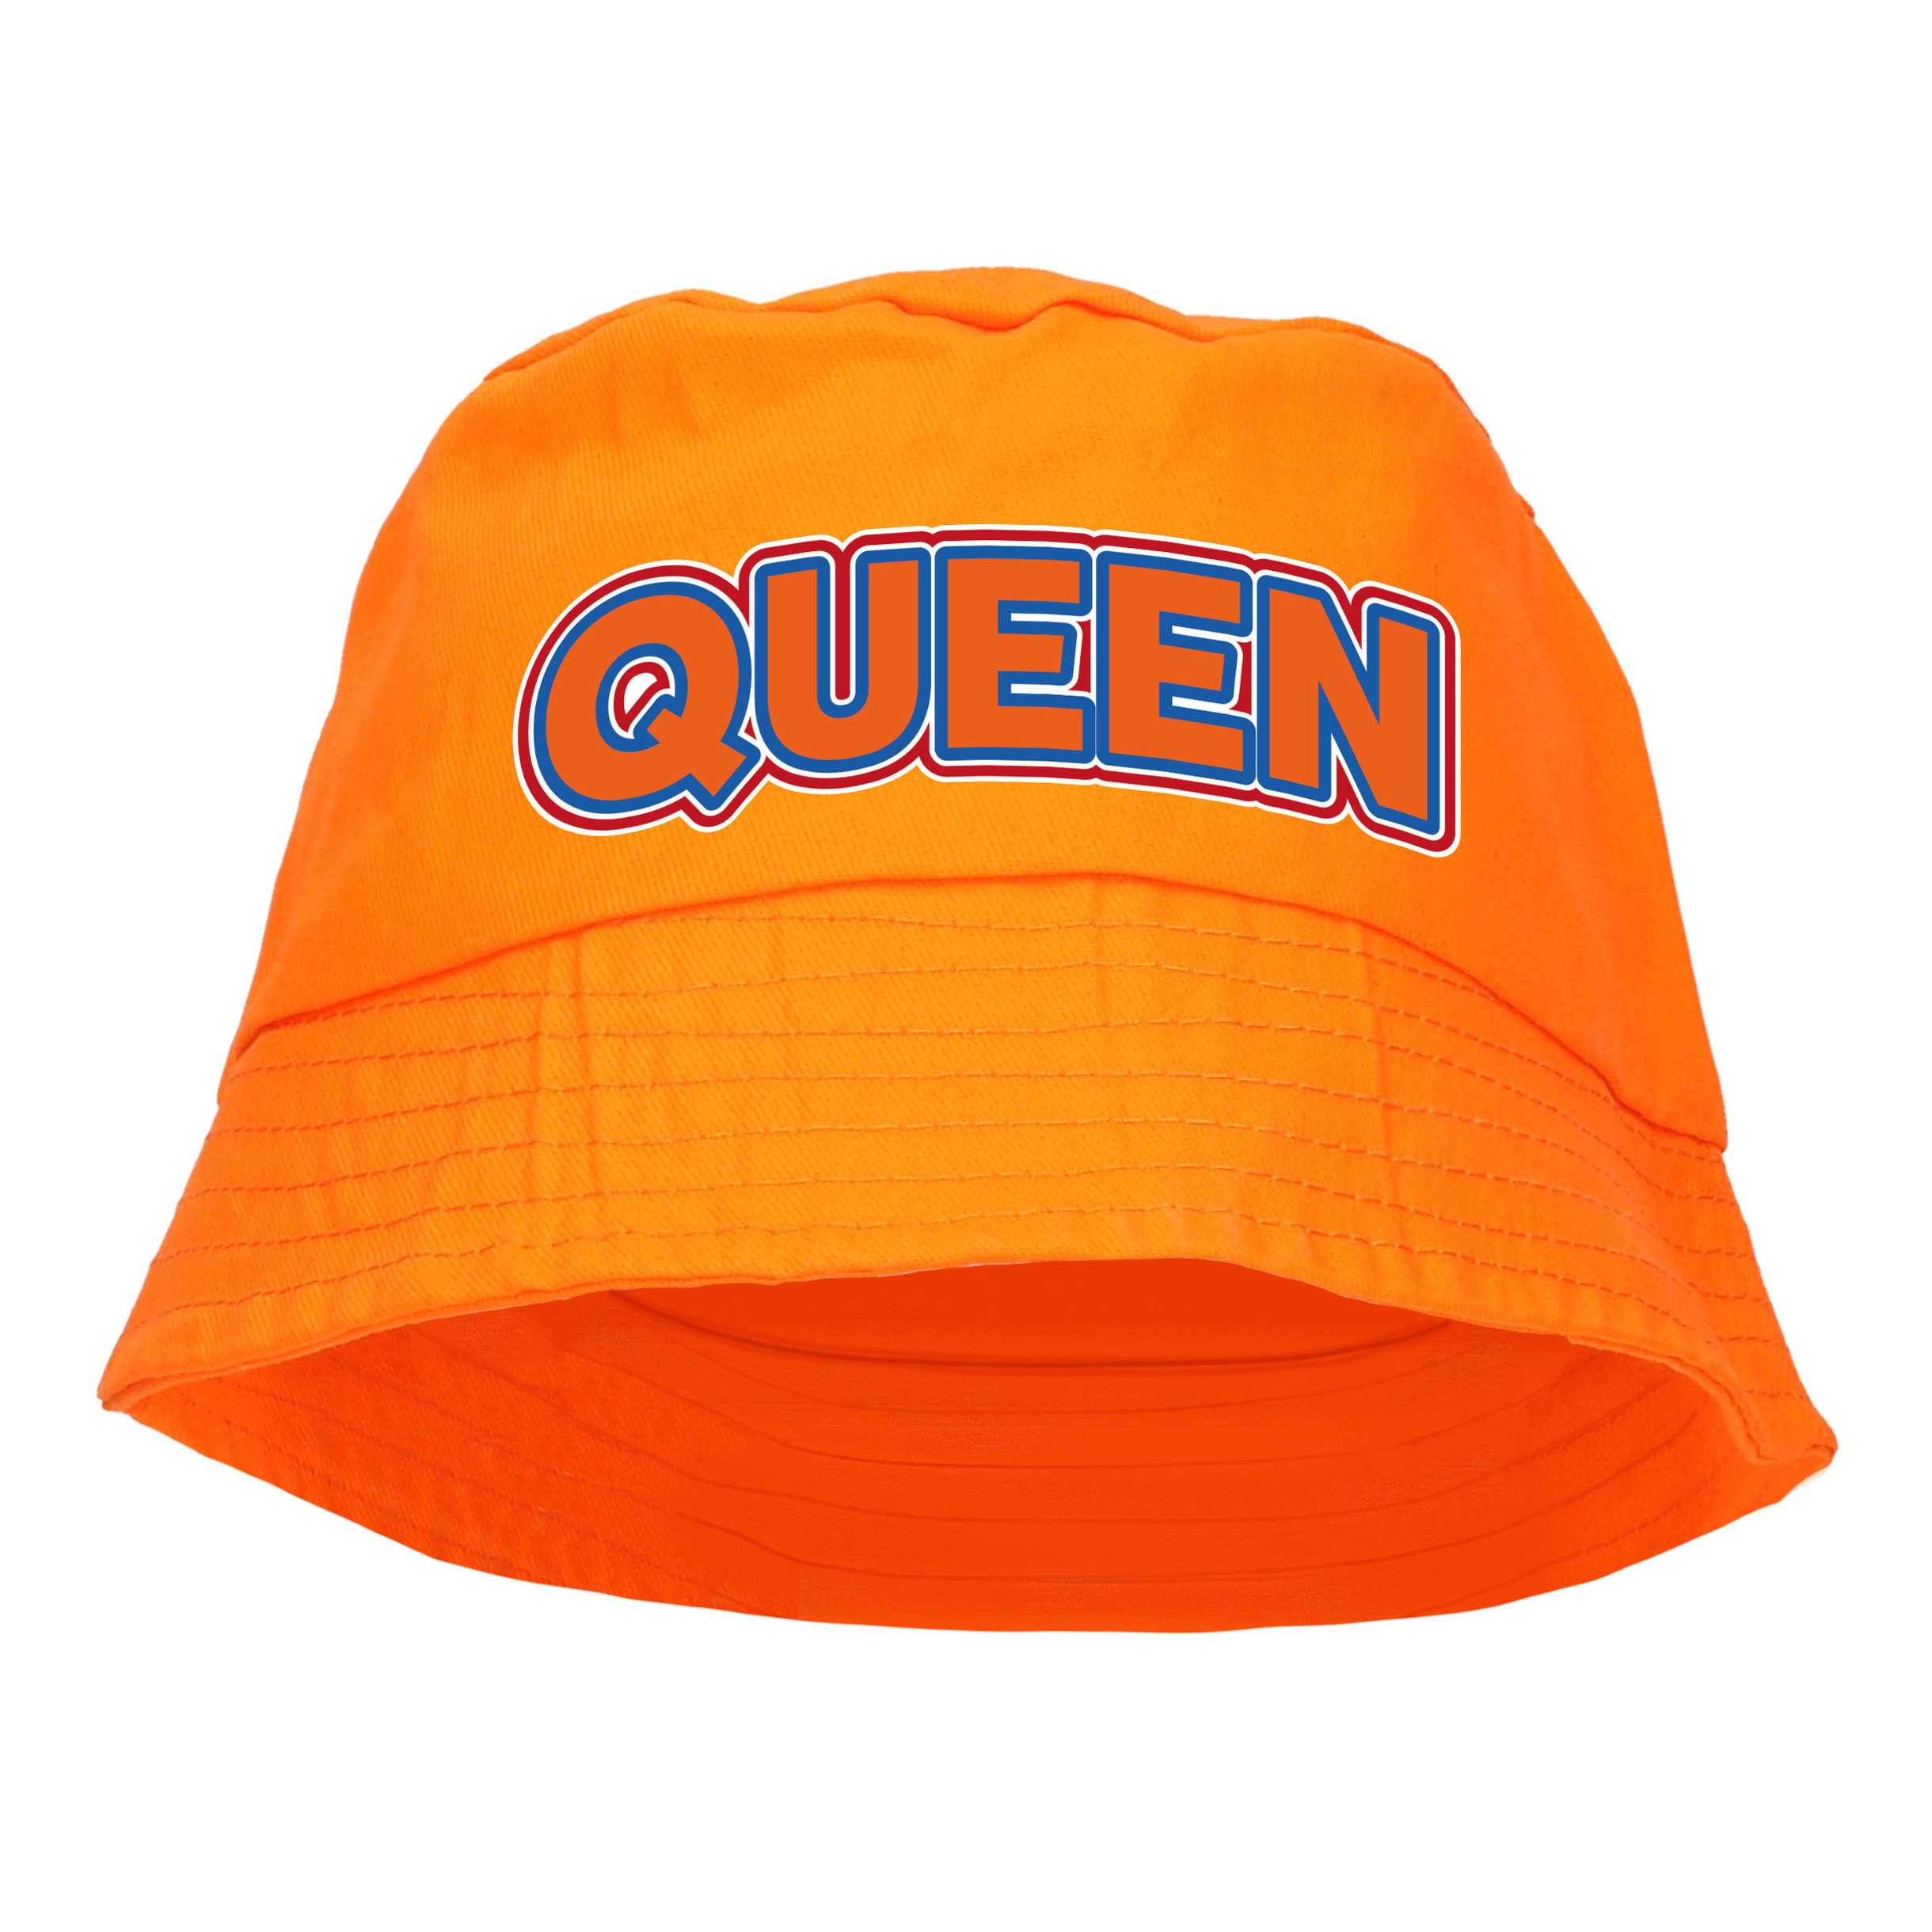 Koningsdag vissershoedje-bucket hat oranje queen 57-58 cm